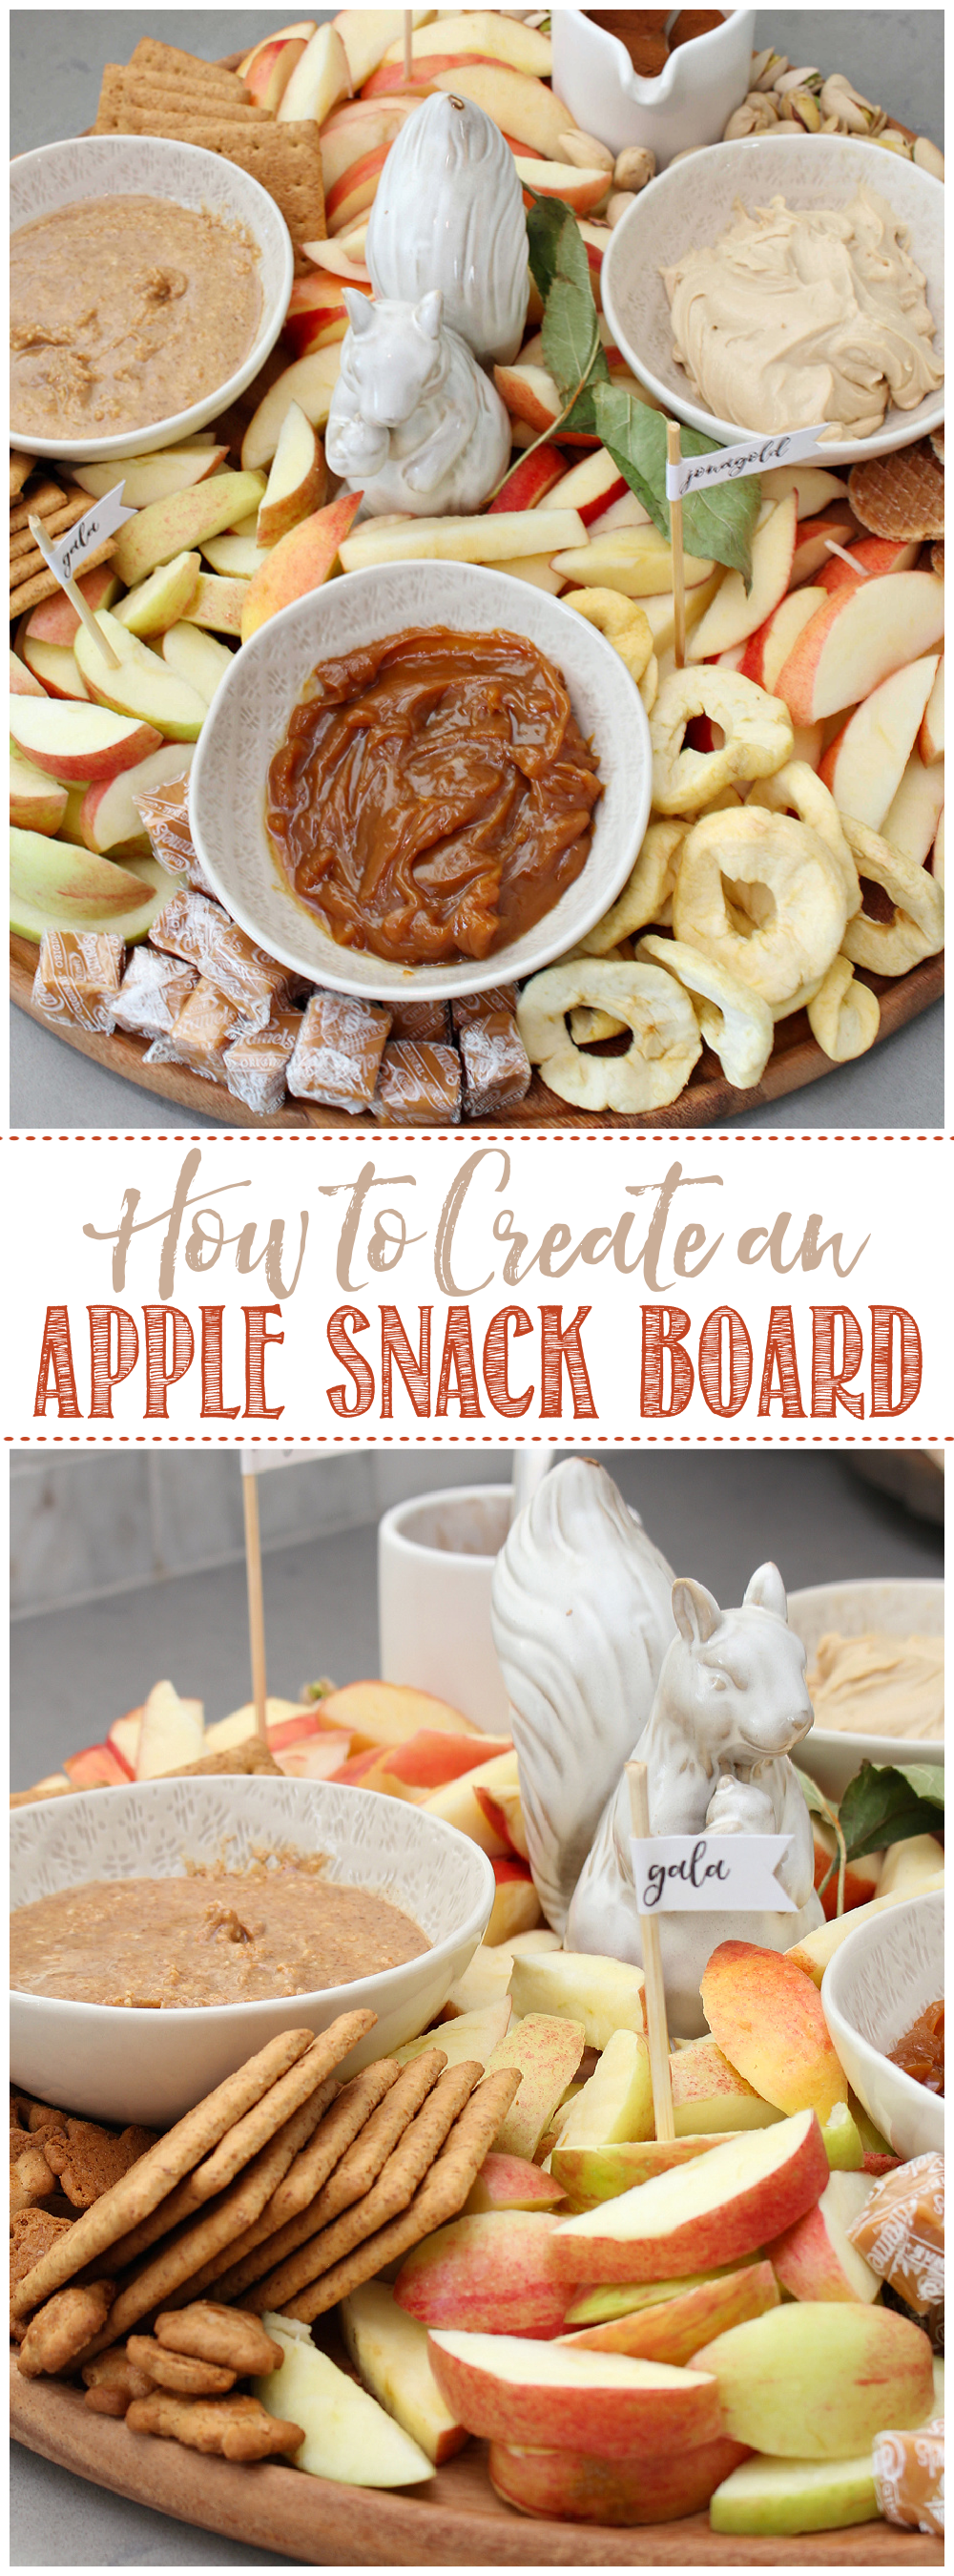 Delicious apple snack board charcuterie.